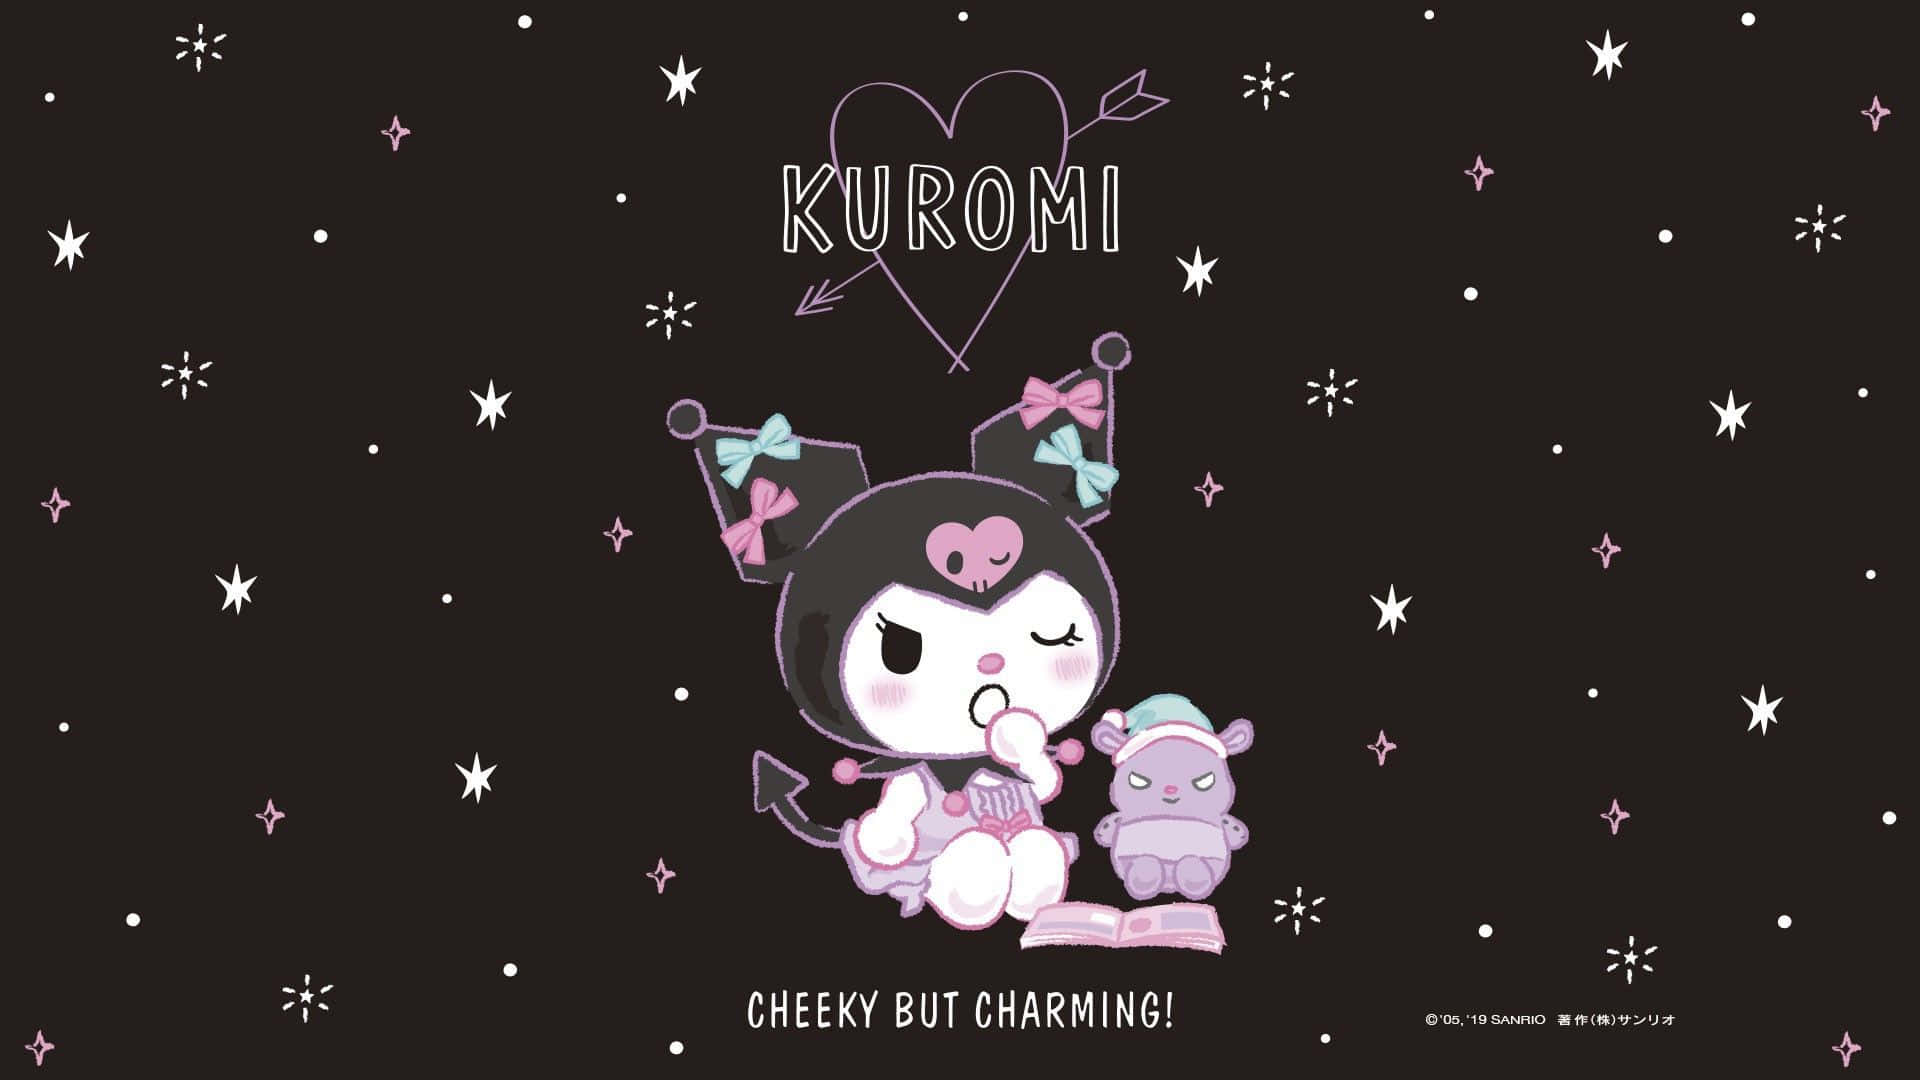 The mischievous Kuromi and her cute friends await you!